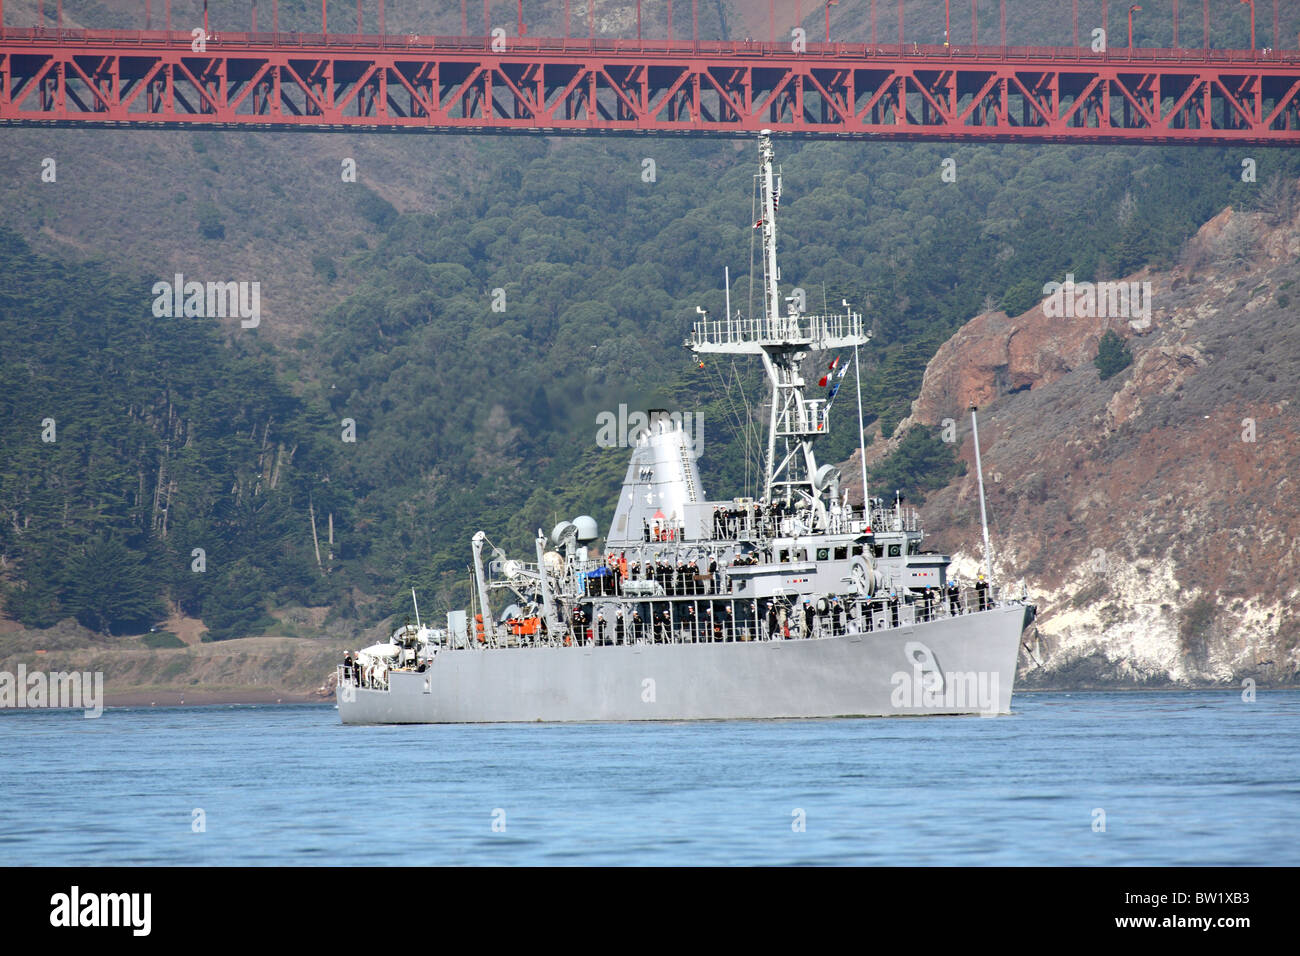 La lutte contre les mines, le USS Pioneer (MCM 9) sur la baie de San Francisco. Banque D'Images